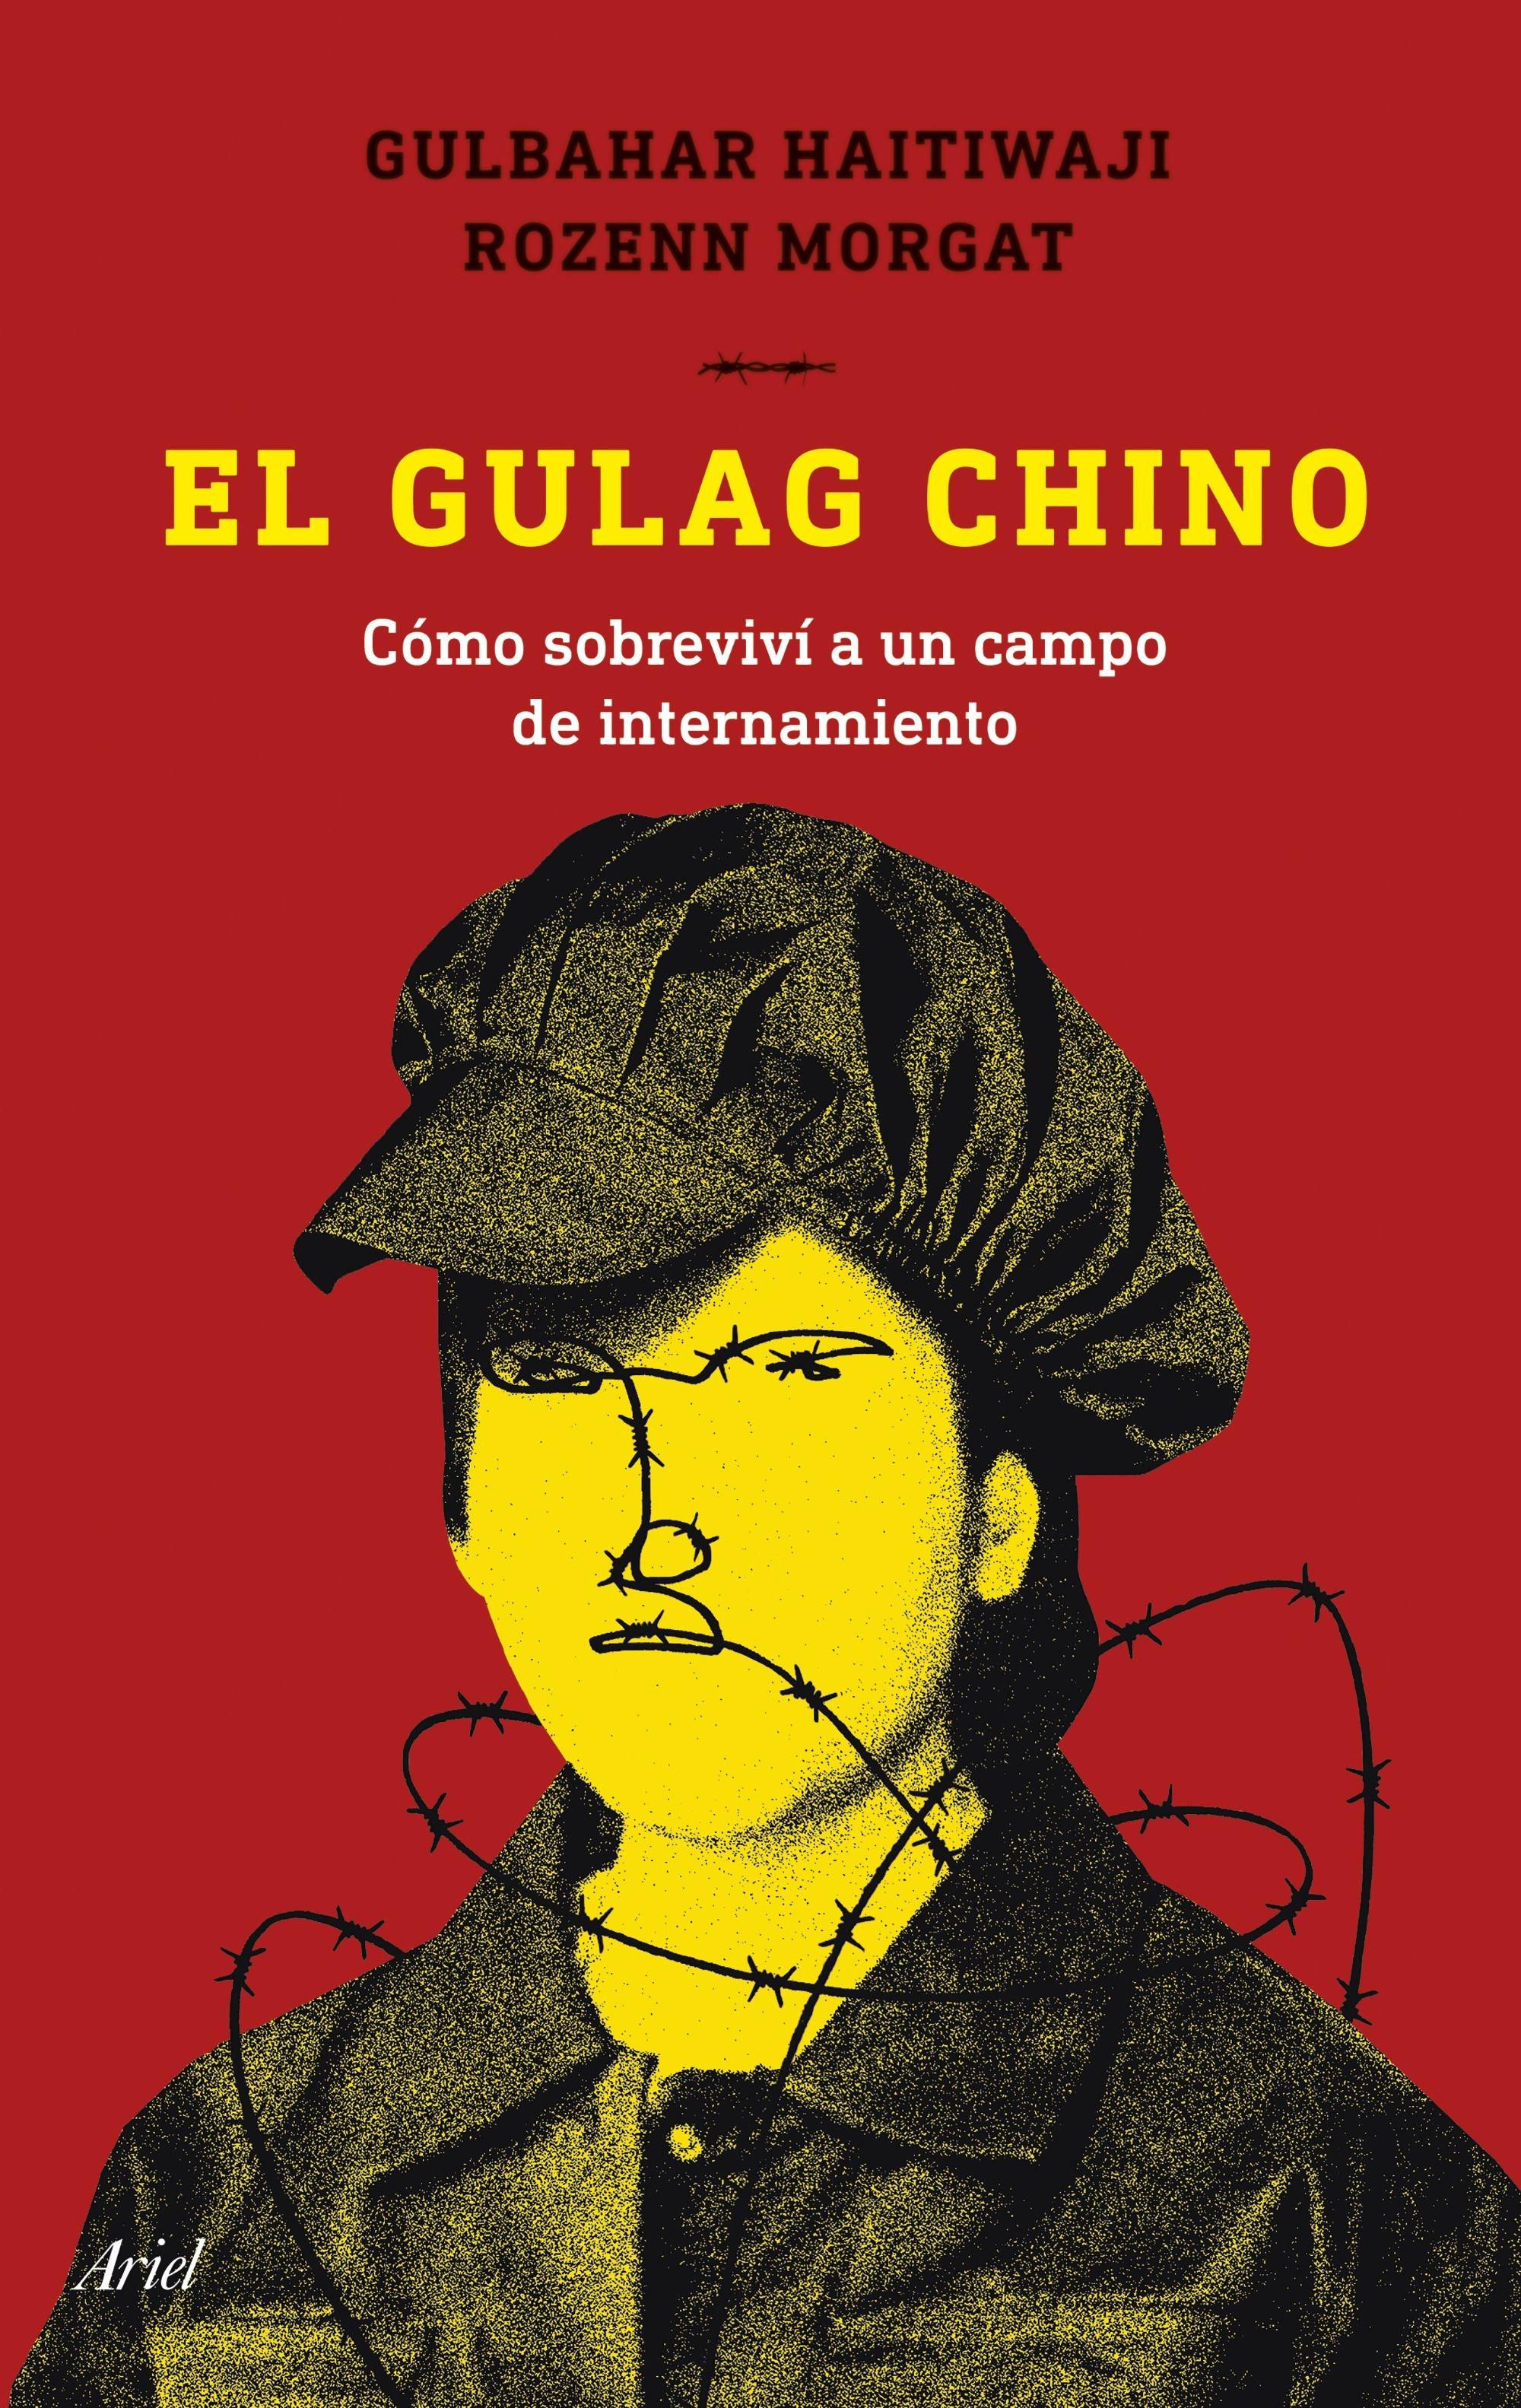 El Gulag Chino "Cómo Sobreviví a un Campo de Internamiento". 